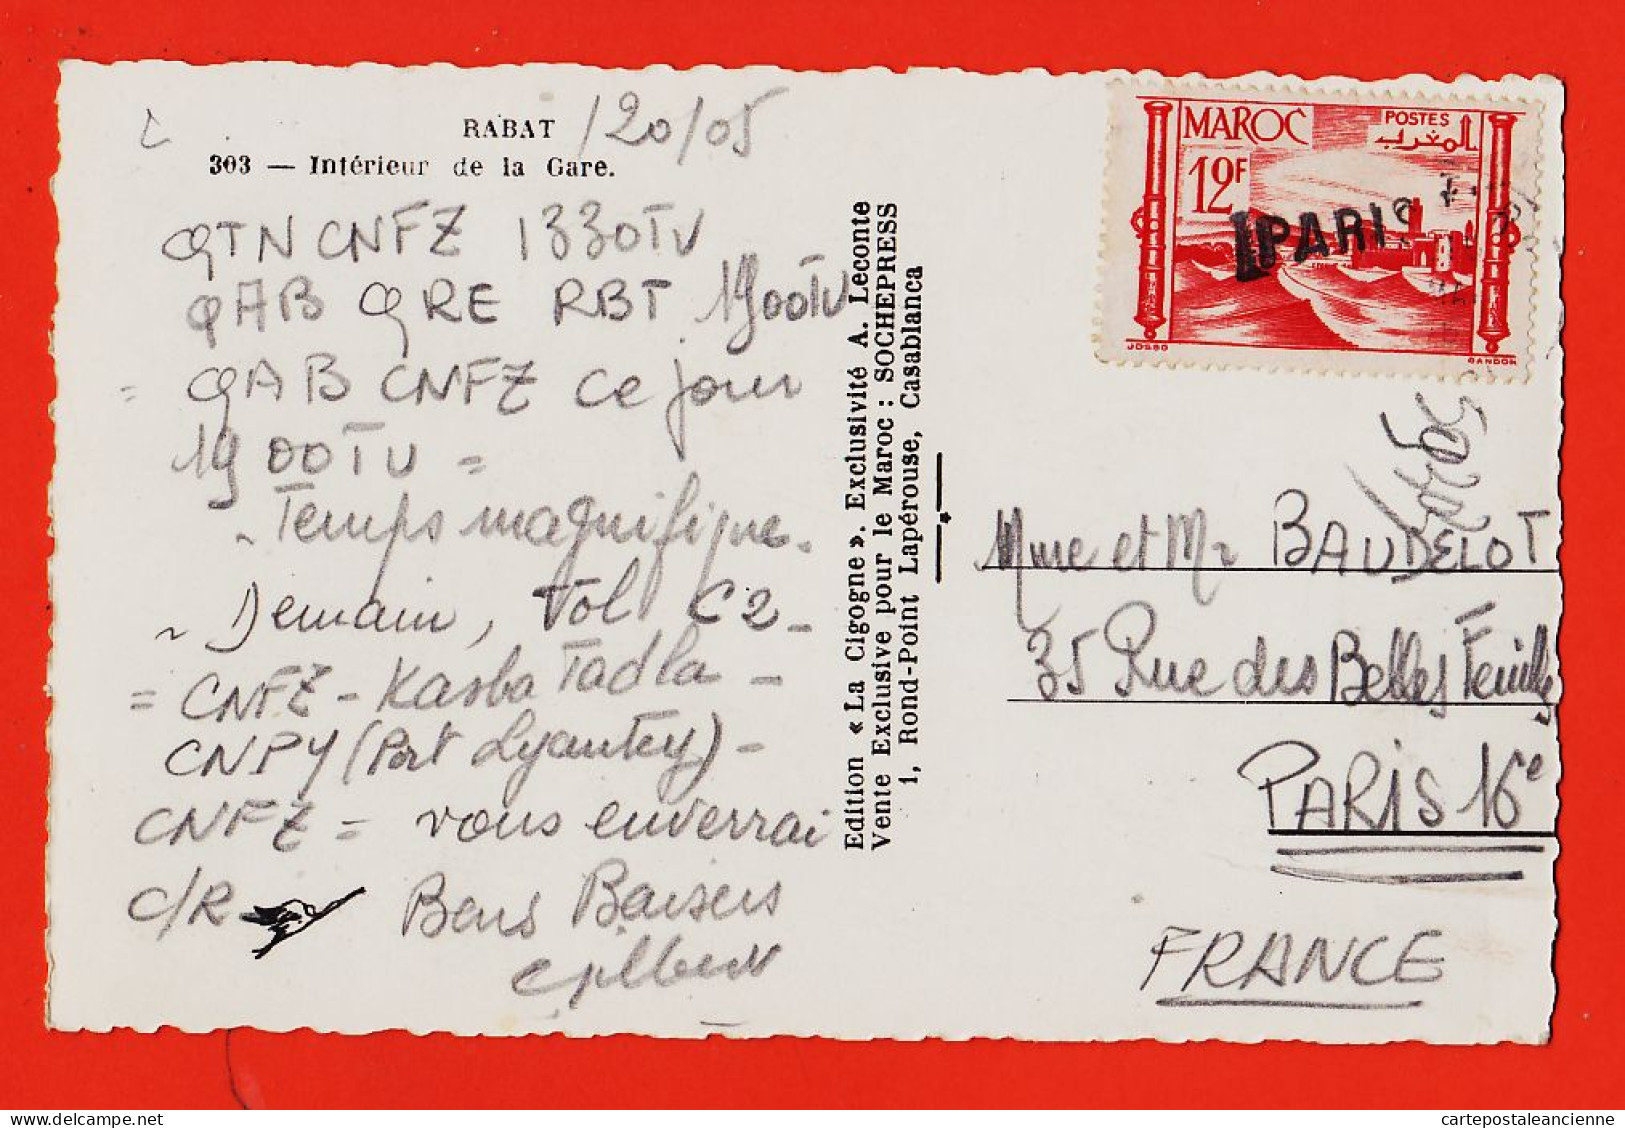 31217 / Lisez Correspondance Codée Vols Aériens RABAT Maroc Intérieur GARE 1951 à BAUDELOT Paris-Photo-Bromure CIGOGNE - Rabat